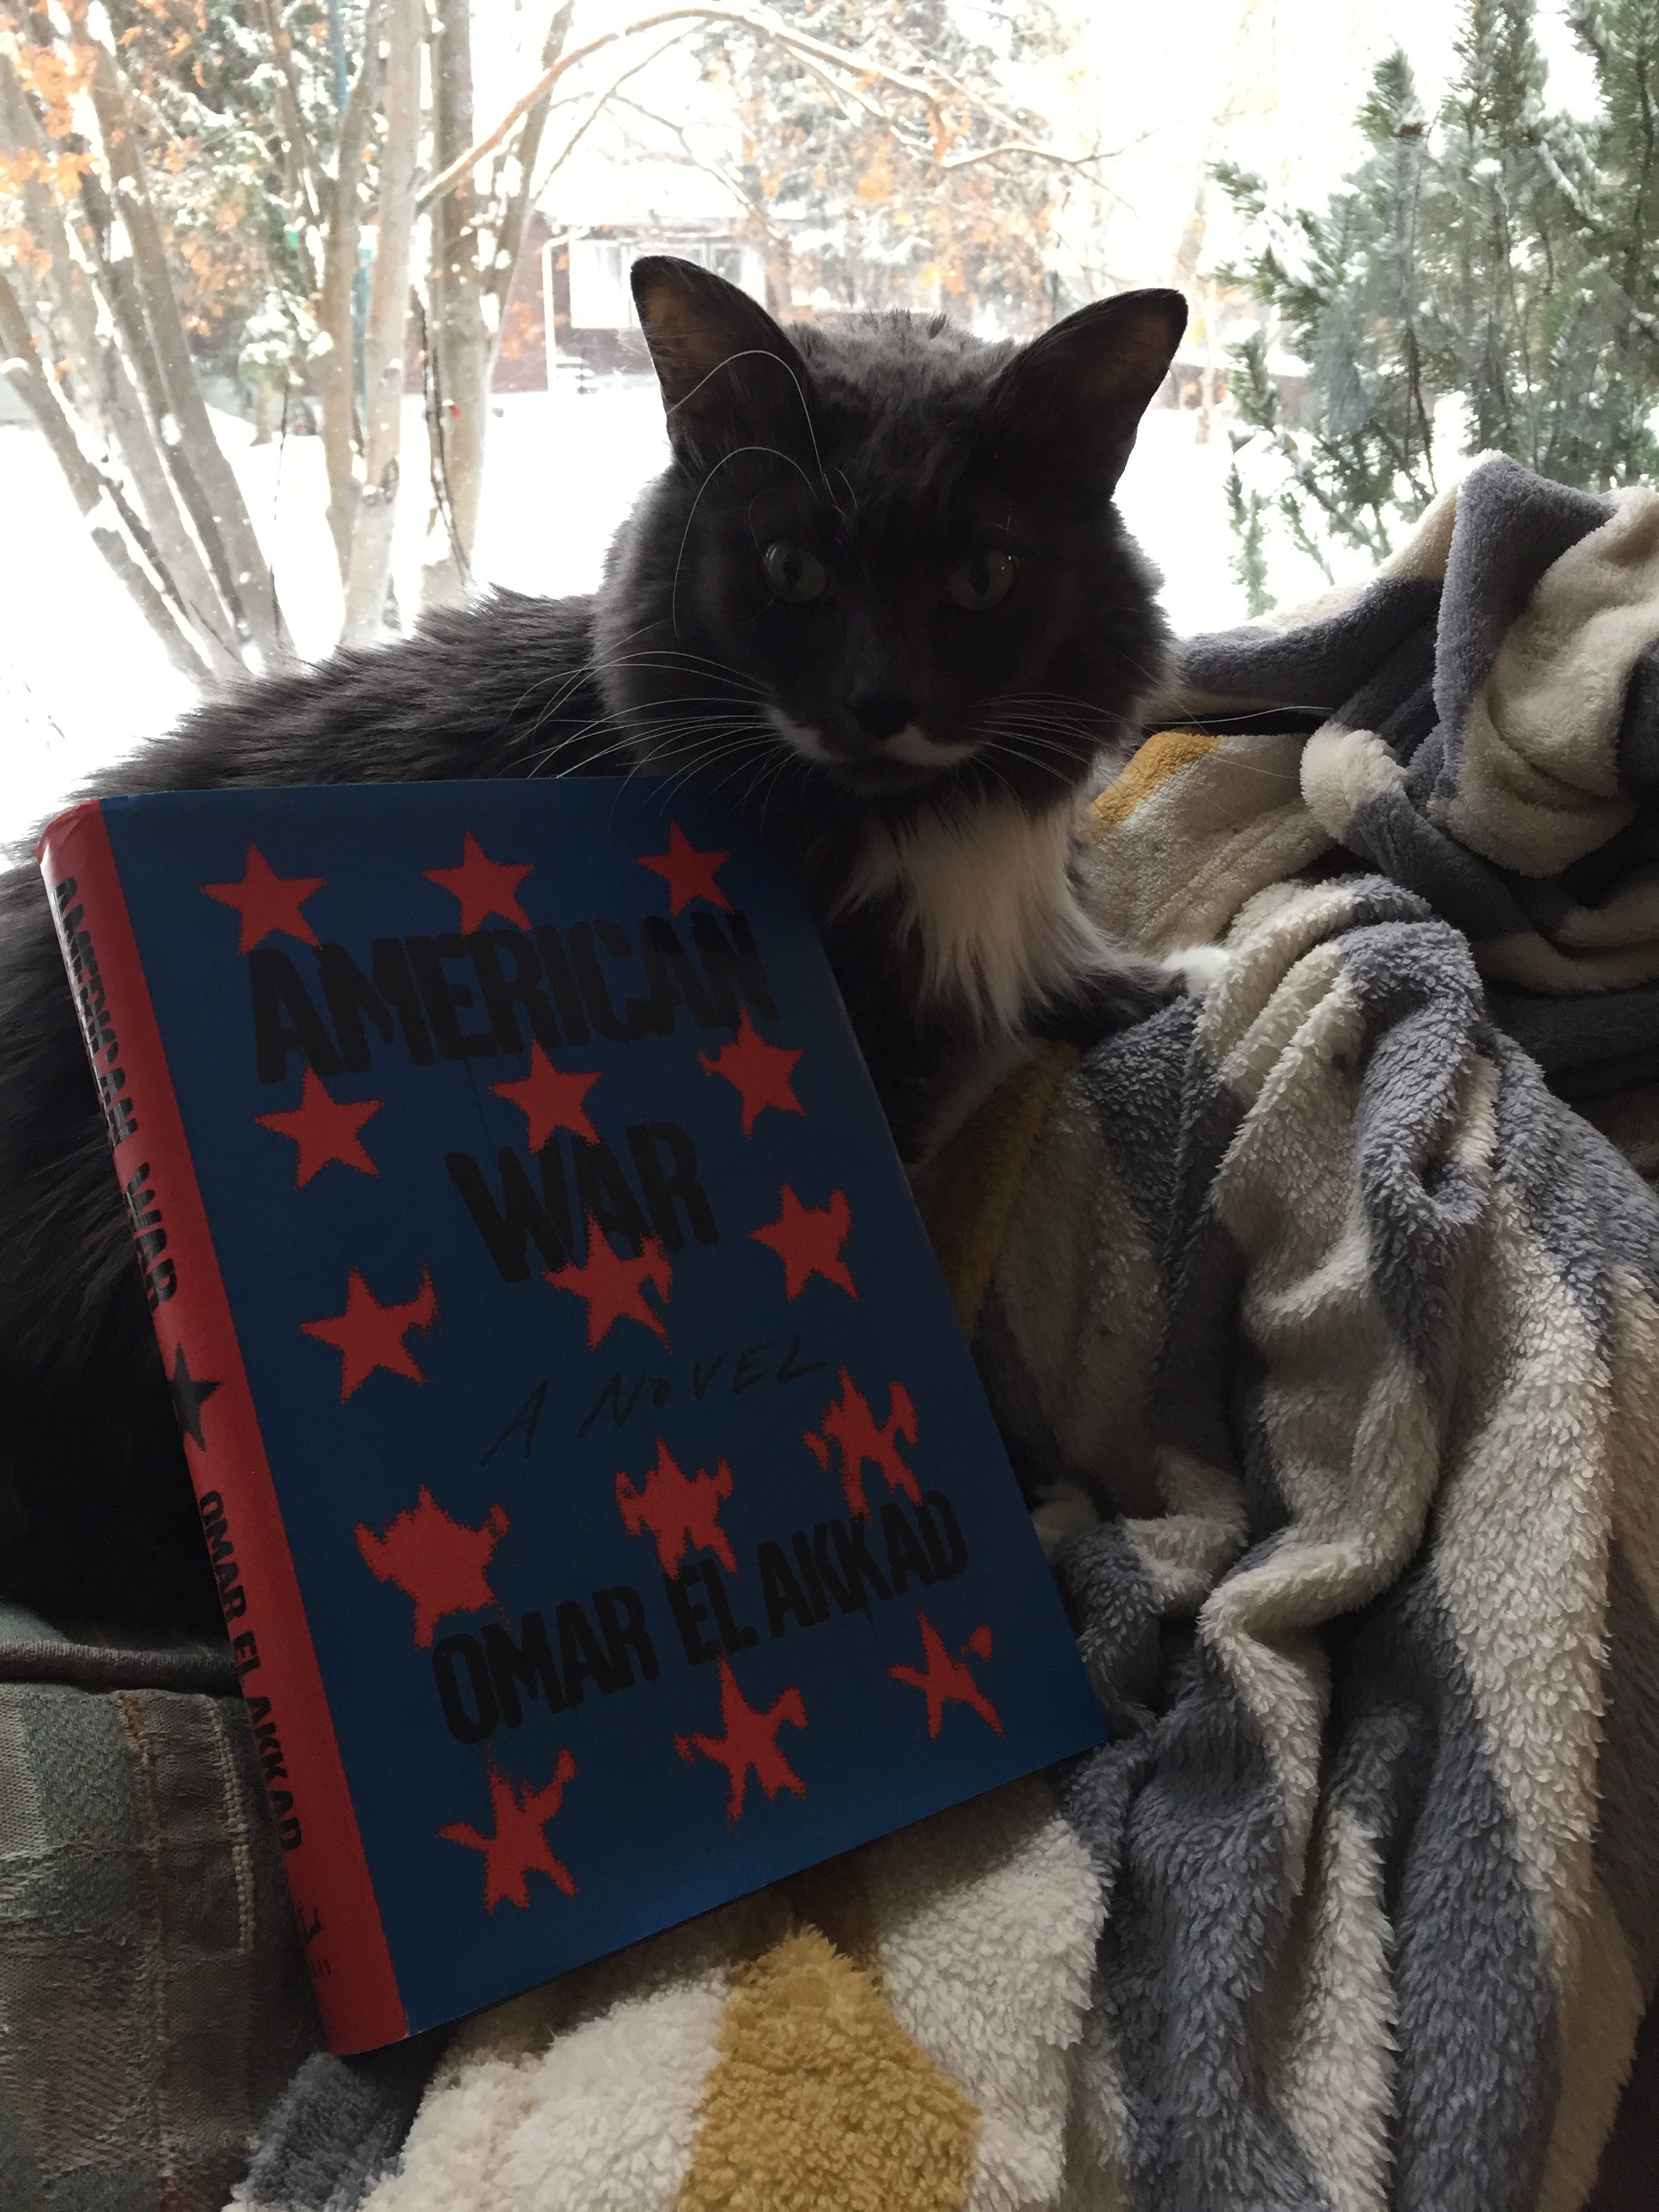 Book Review: American War by Omar El Akkad